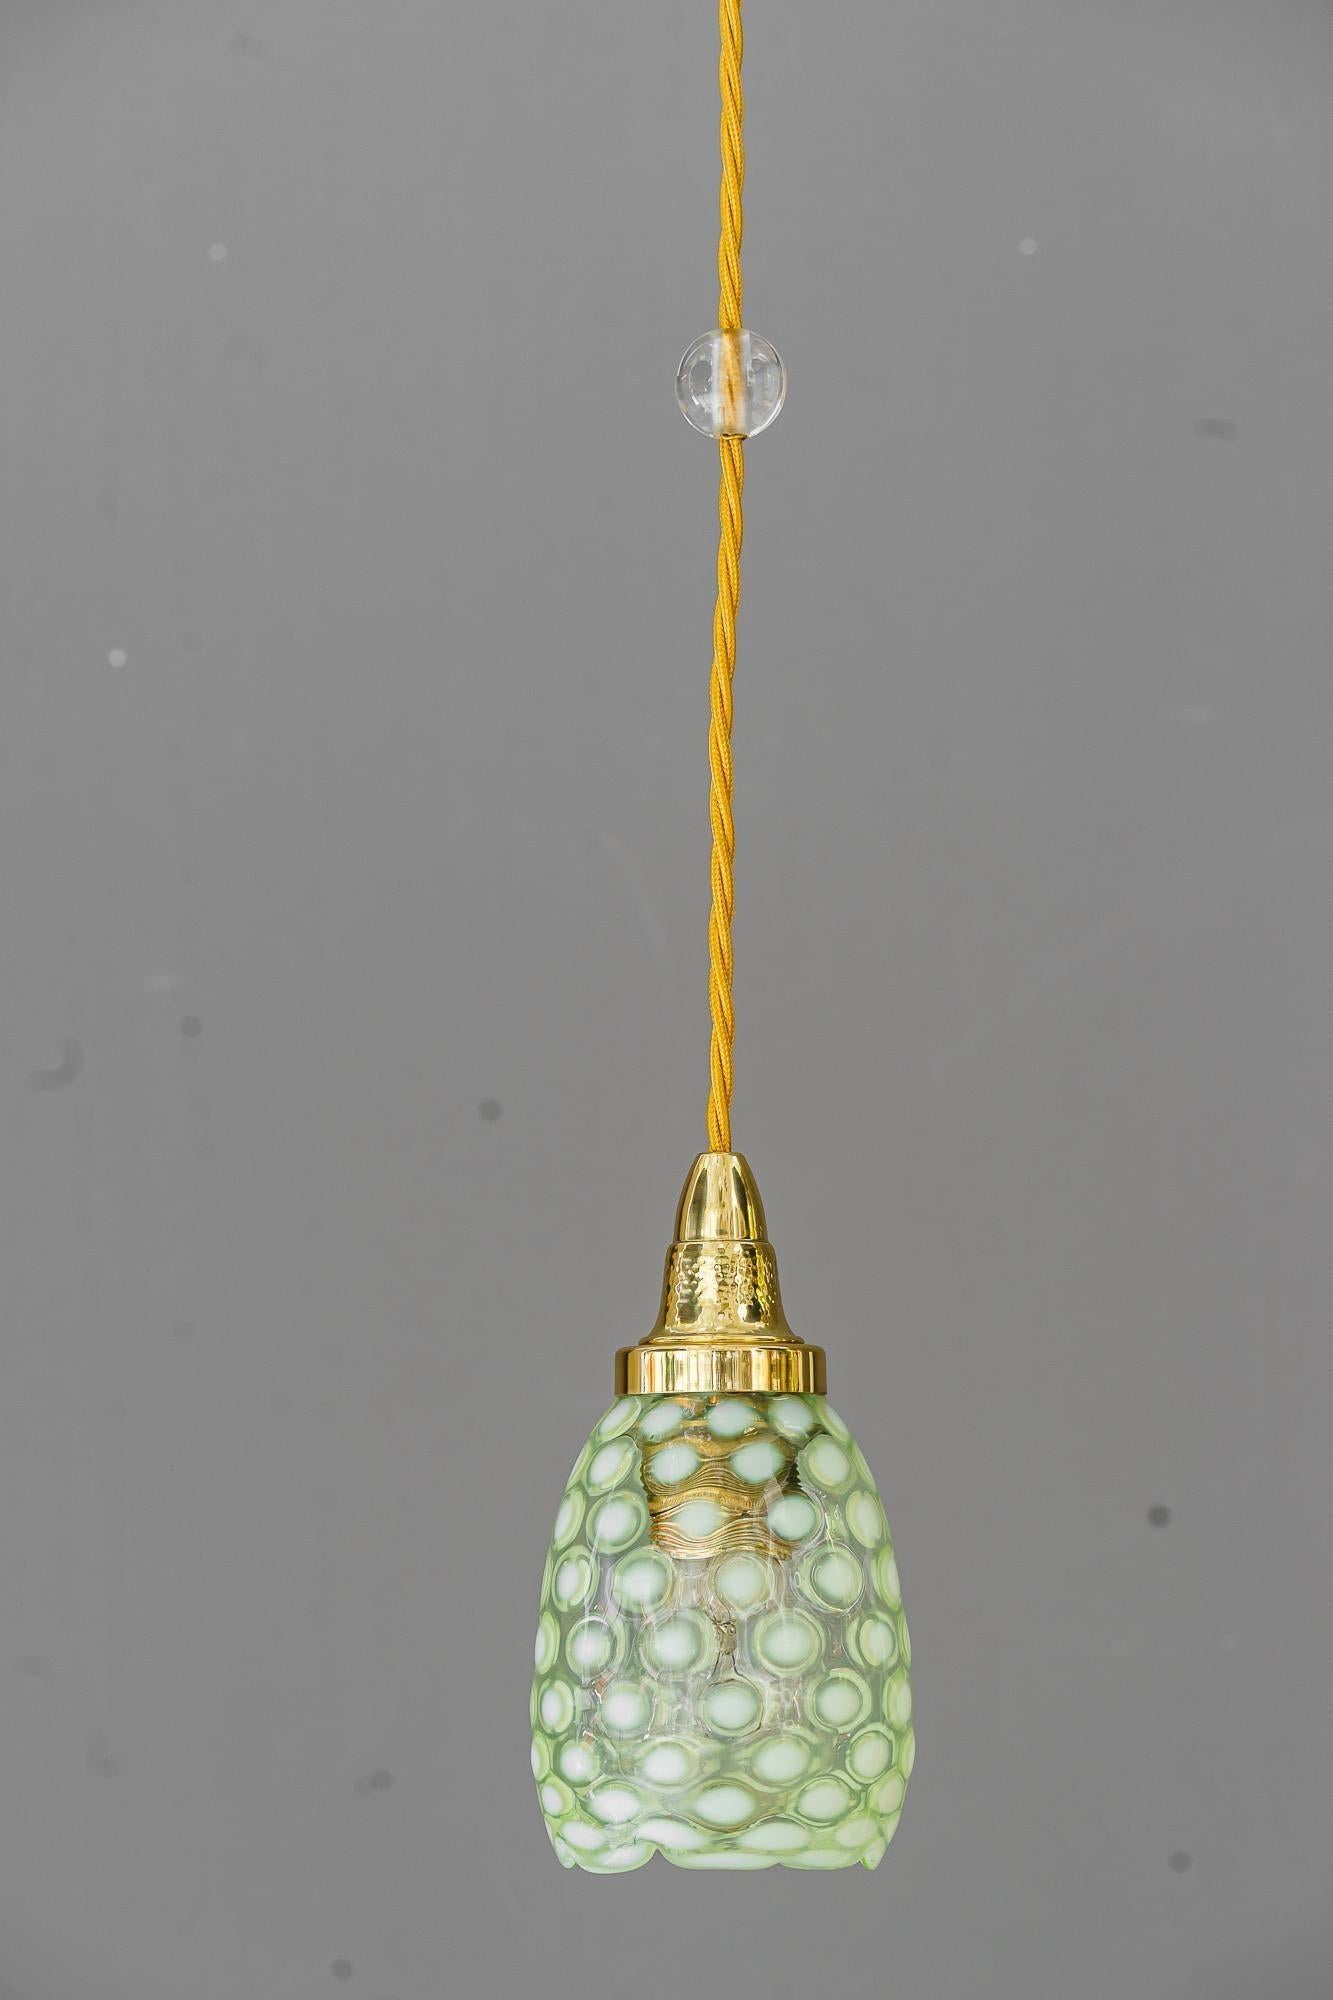 Suspension Art déco avec abat-jour en verre opalin d'origine vienne vers 1920
Laiton poli et émaillé au four
Nous pouvons ajuster la hauteur de la lampe pour qu'elle s'adapte à la hauteur de votre pièce.
